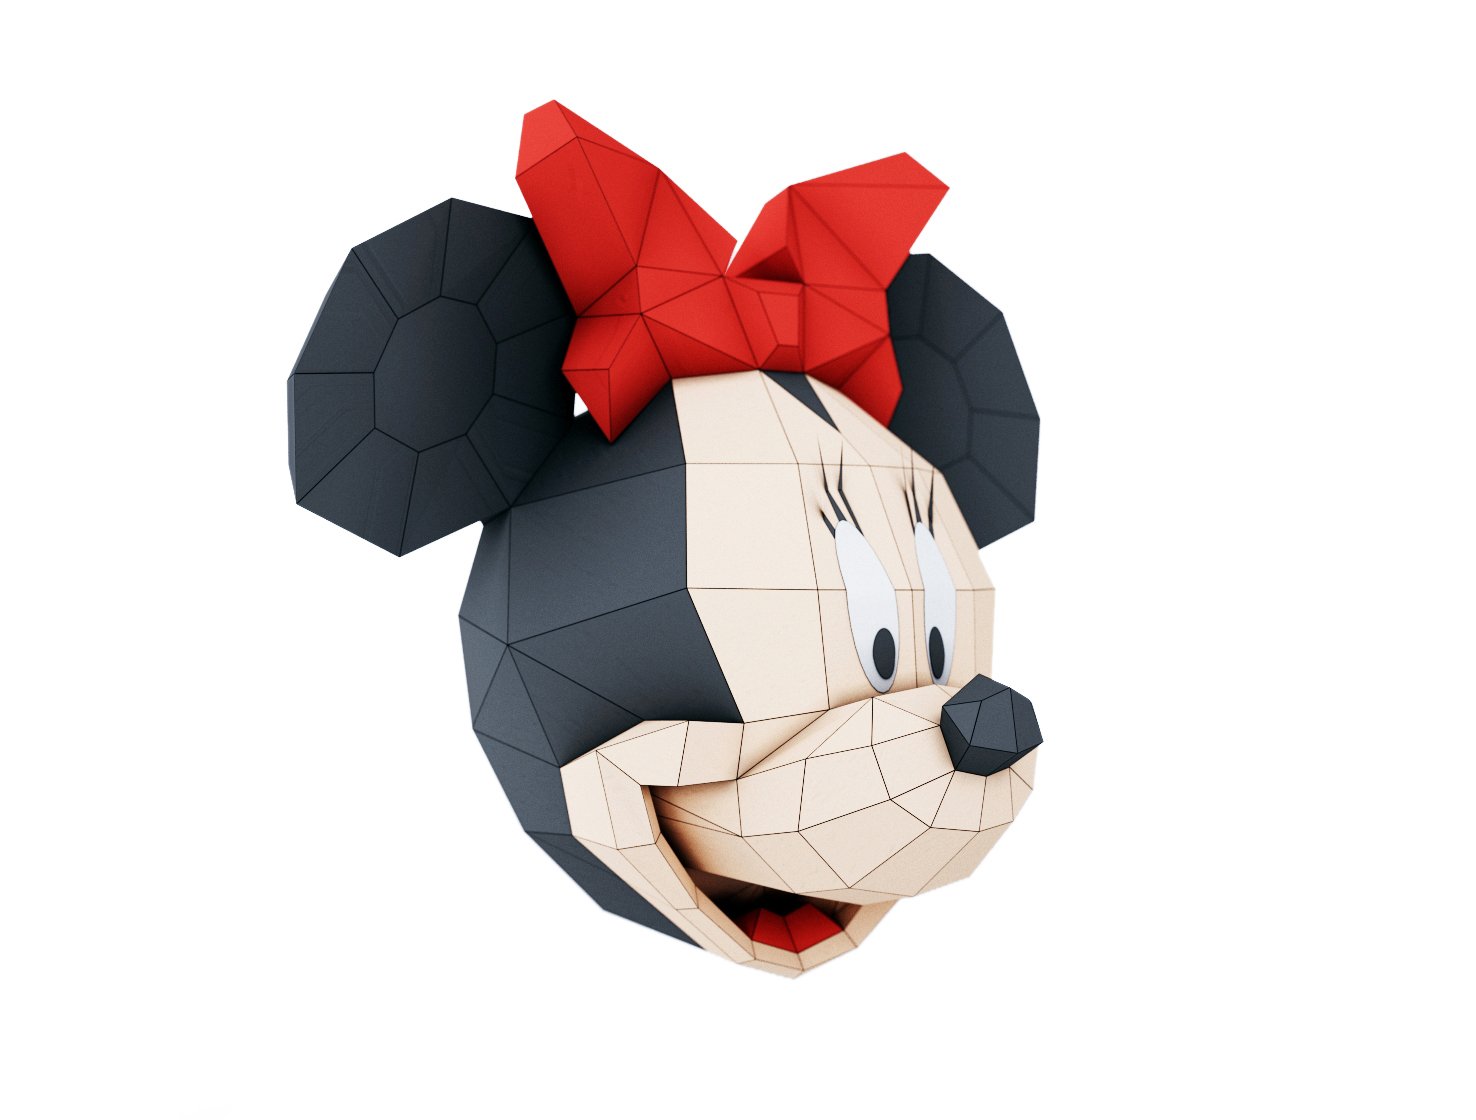 minnie mouse cartoon head